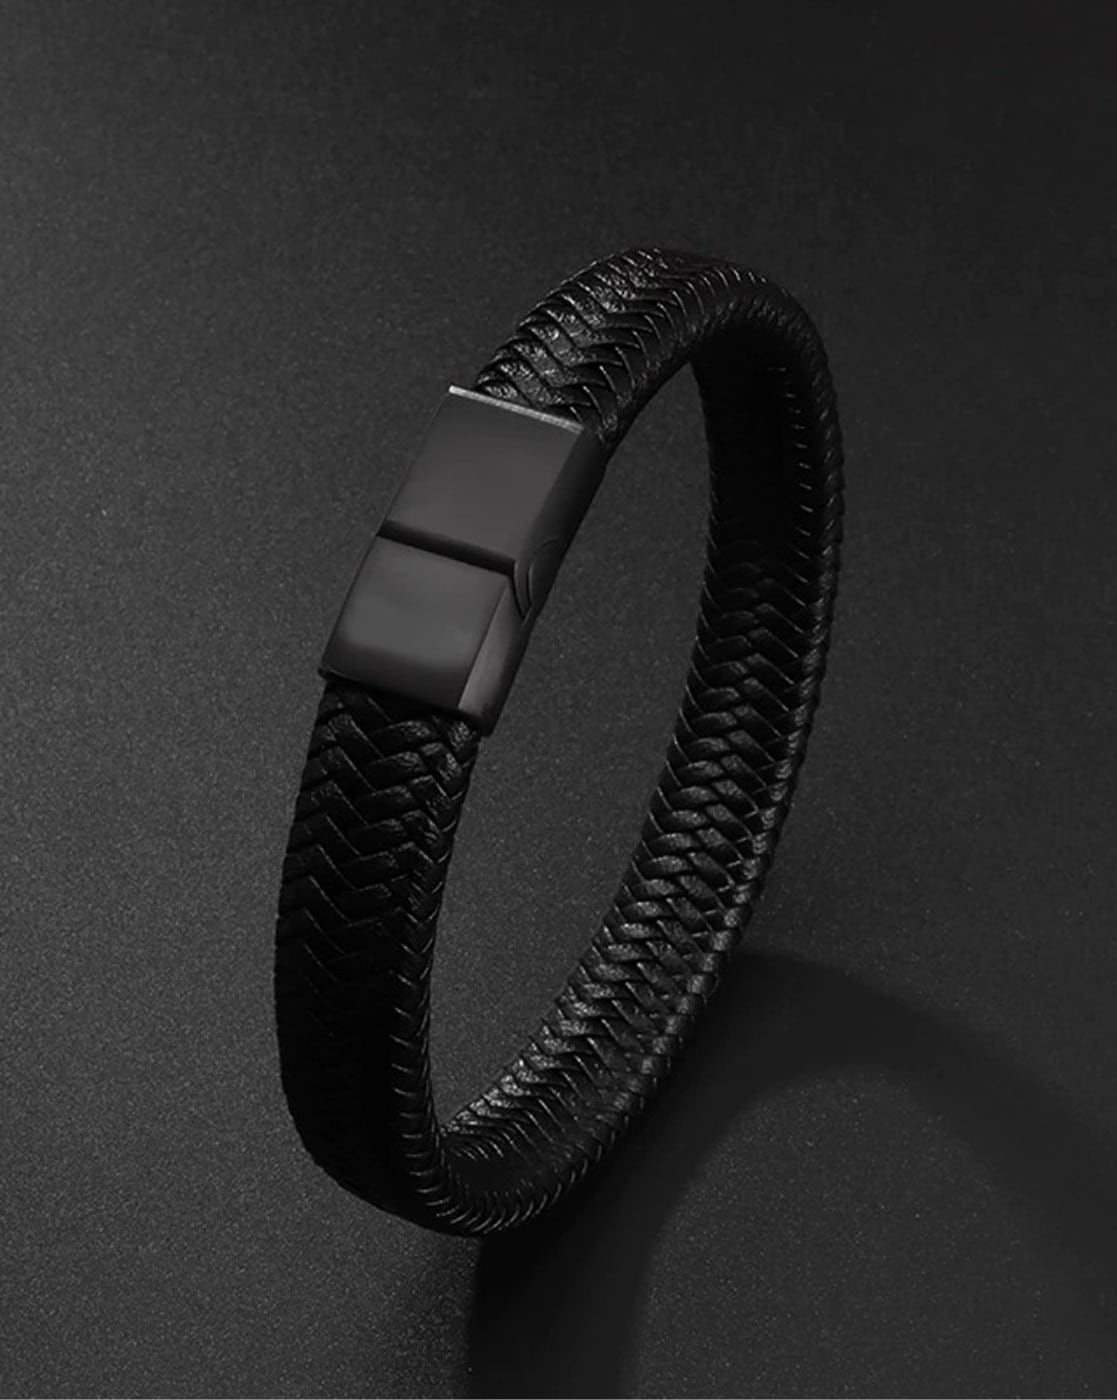 Men's Synthetic Leather Dur A Cuire Black Bracelet